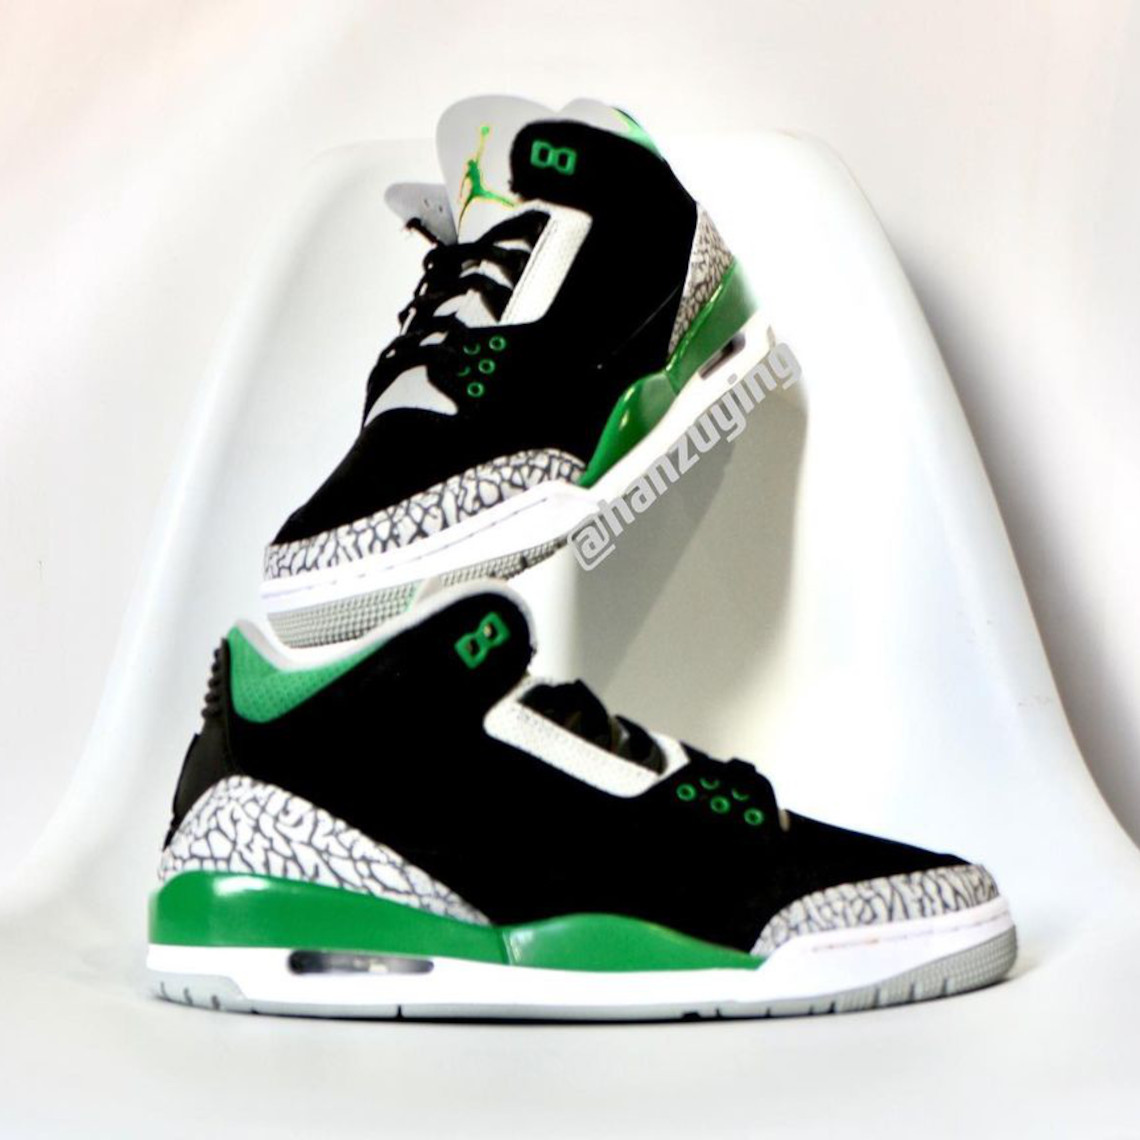 Air Jordan 3 Pine Green CT8532-030 Release Date | SneakerNews.com